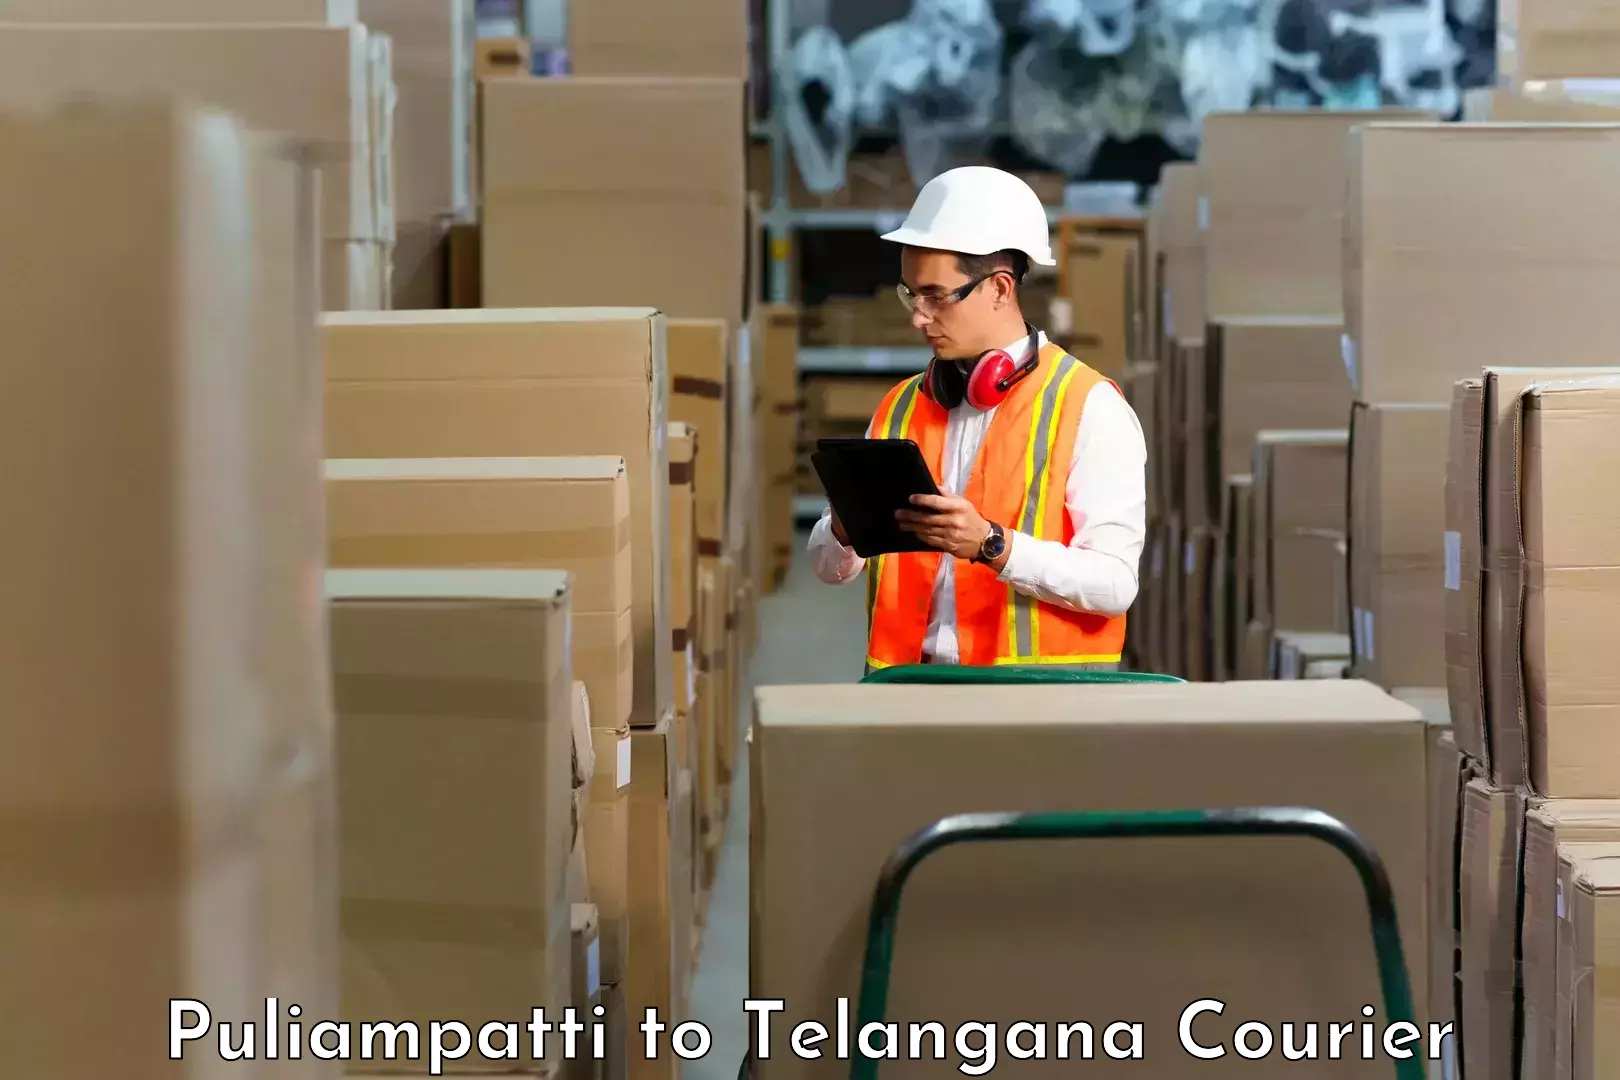 Reliable courier service Puliampatti to Sangareddy